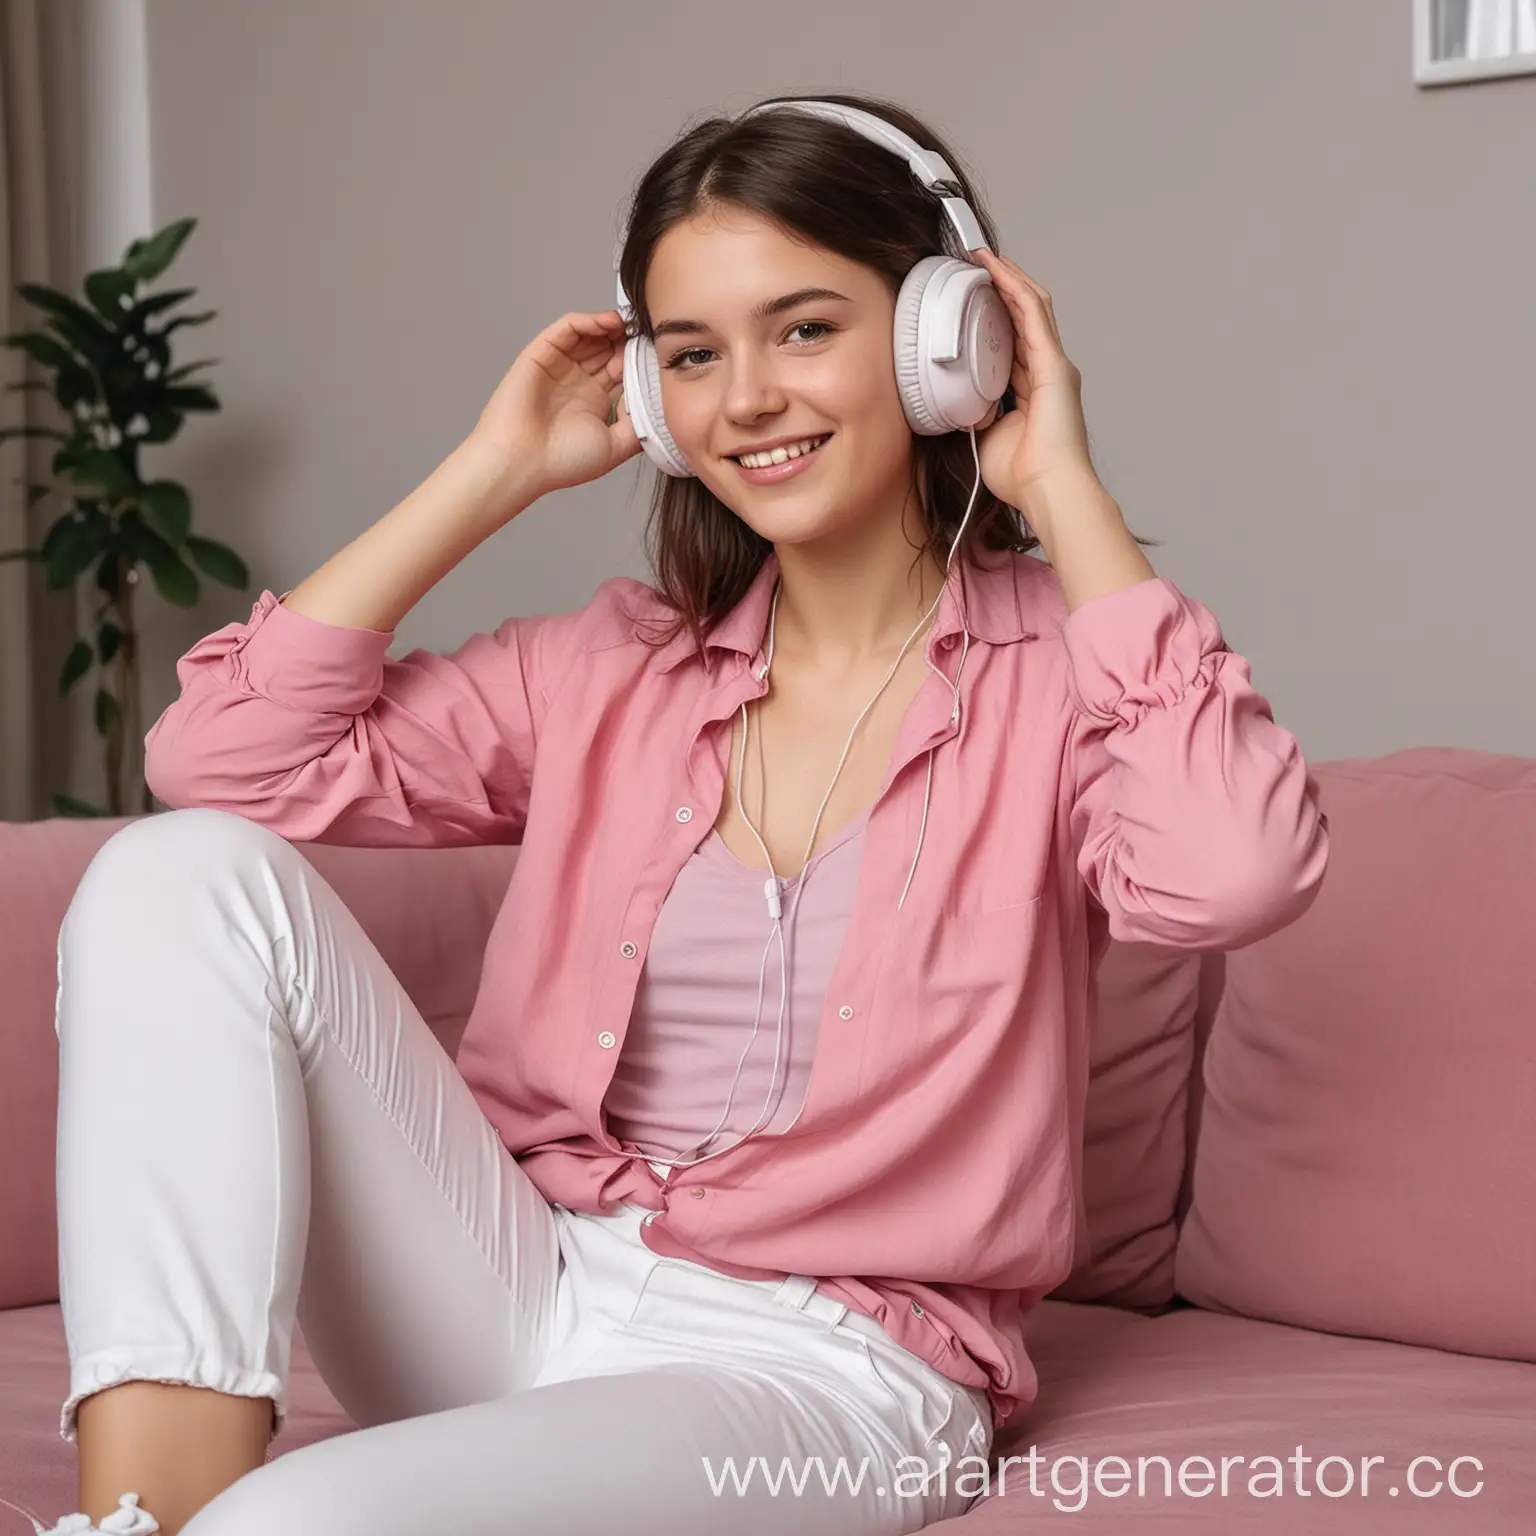 Реальное фото. Девушка 20 лет, сидит на диване в комнате , в наушниках и слушает музыку. Она улыбается. На ней белые брюки , и розовая блузка.